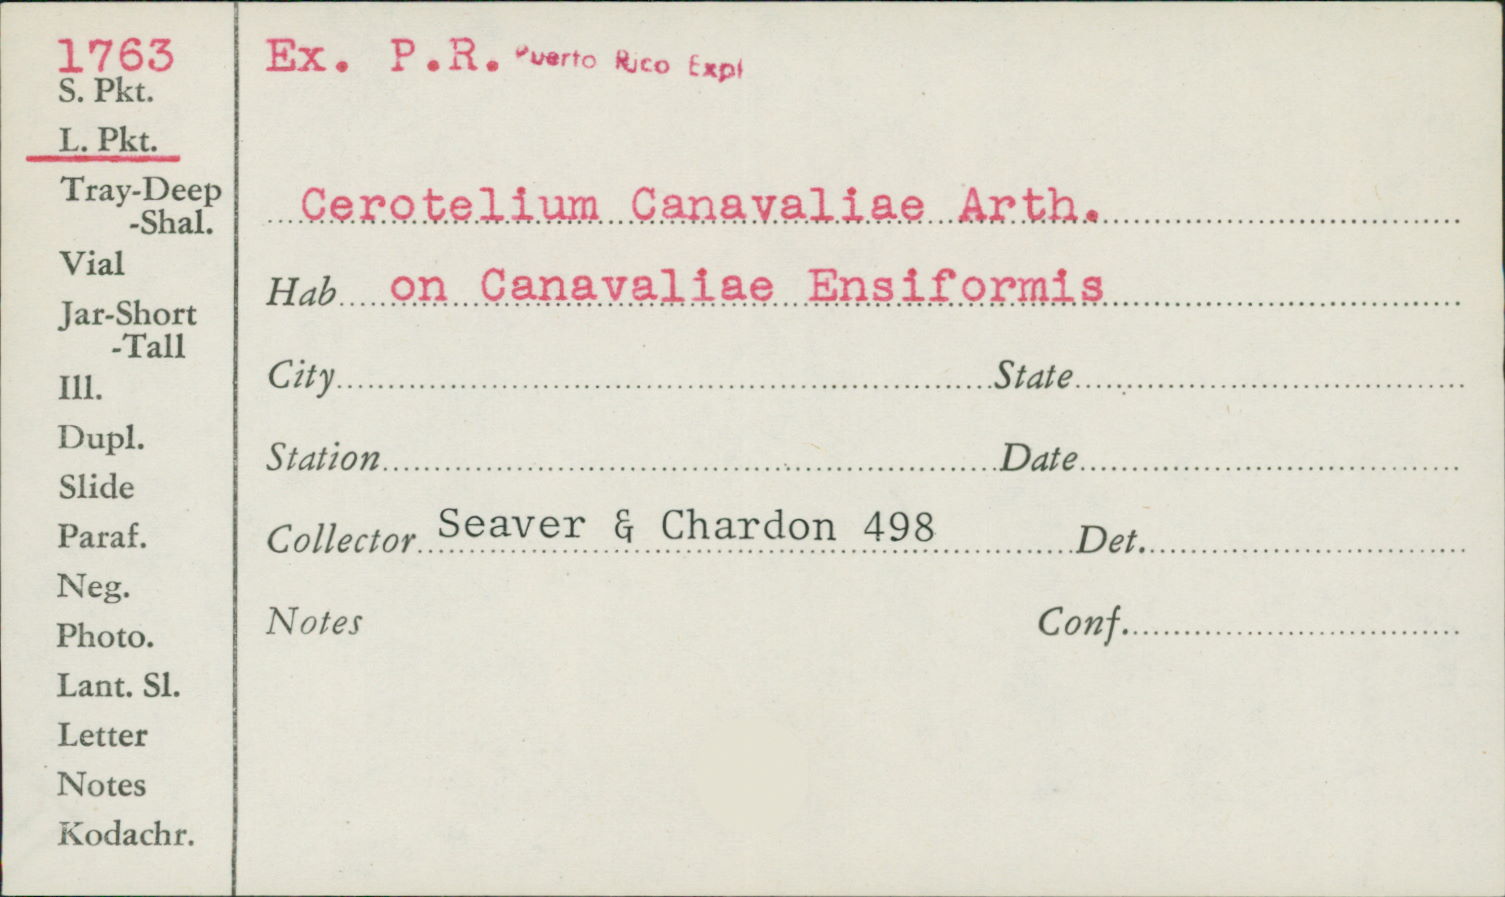 Cerotelium canavaliae image